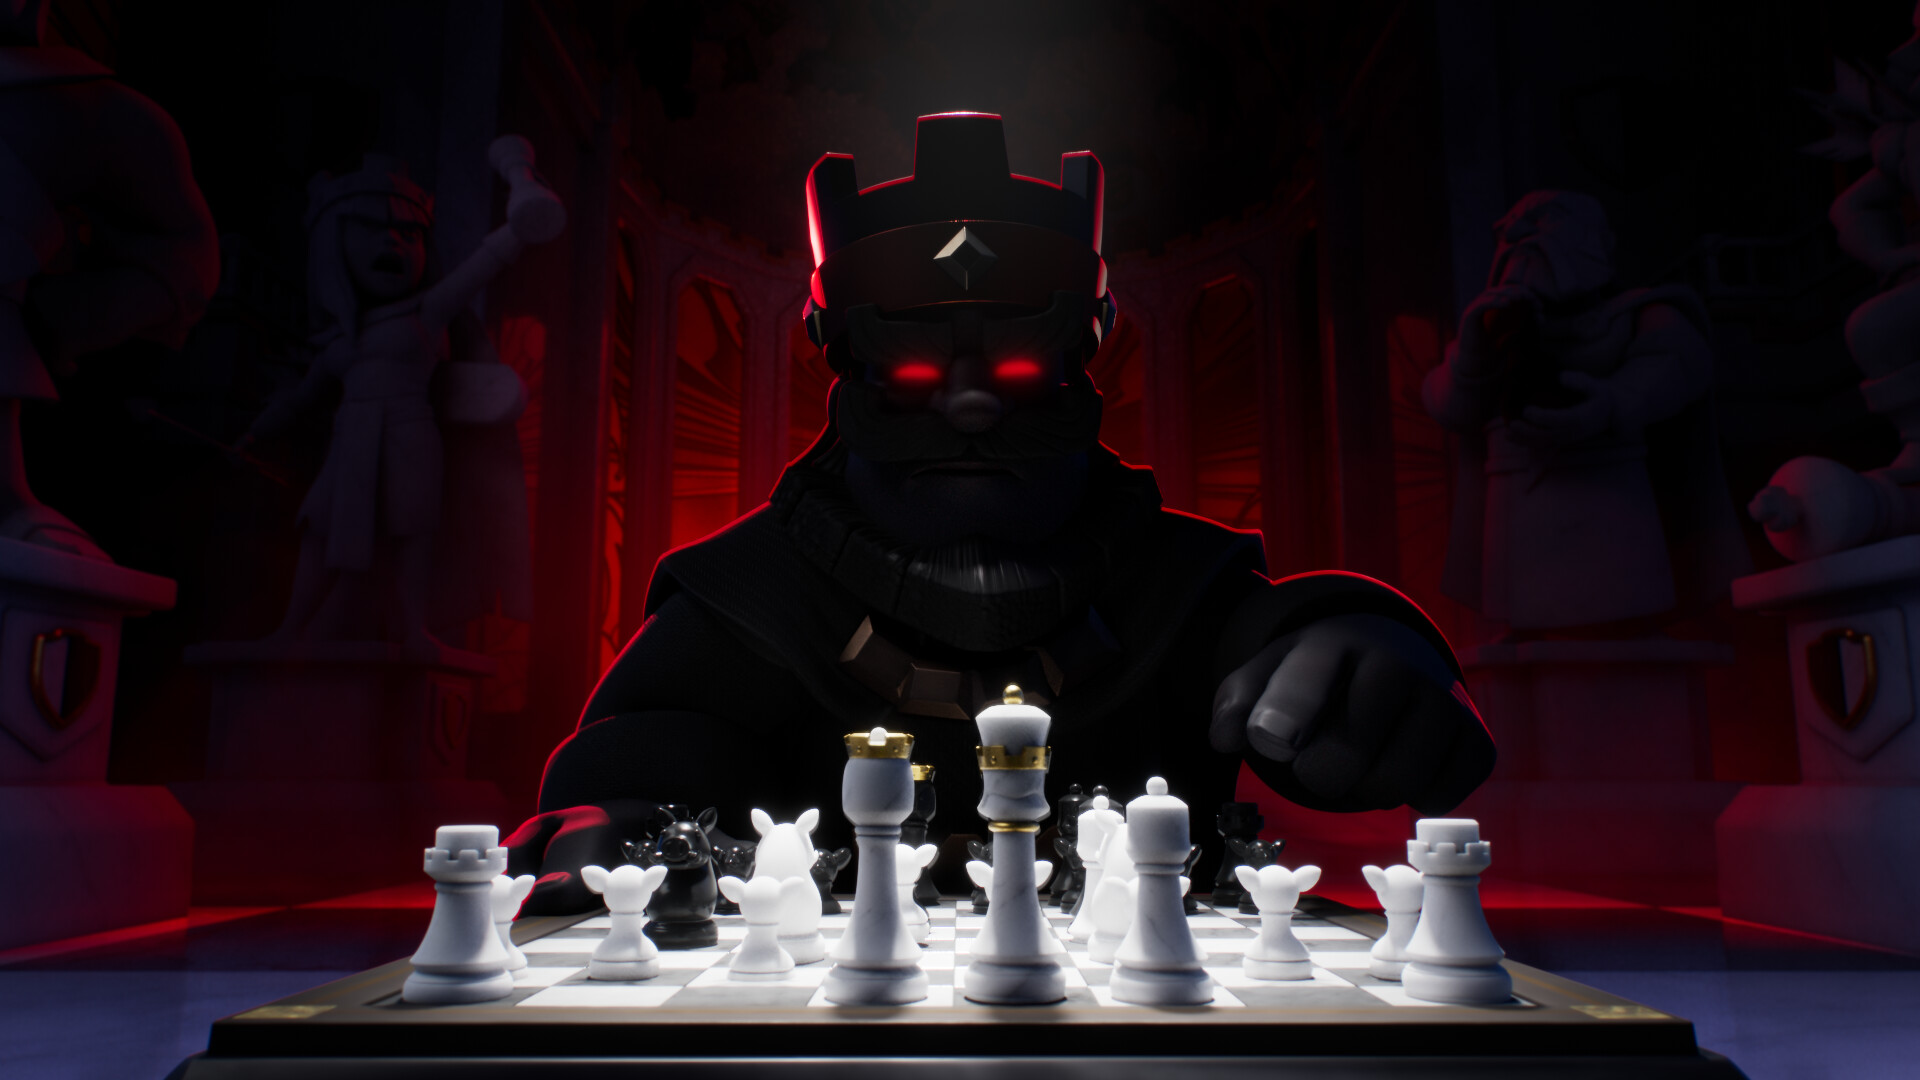 Chess Royale  Clash royale imagenes, Clash royale, Ideas de